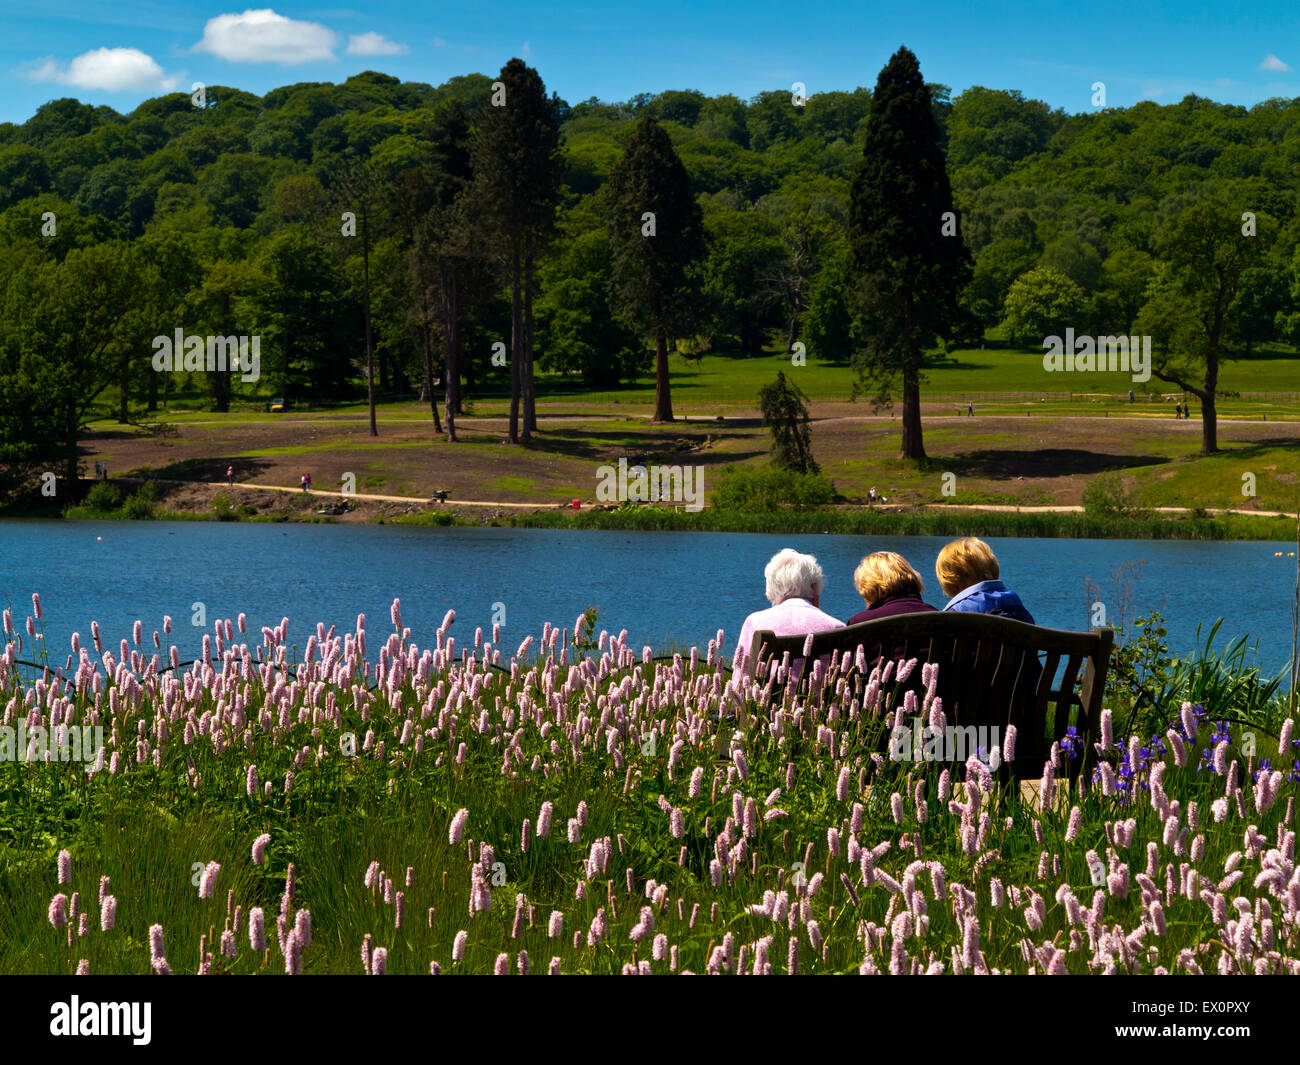 Tre donne anziane accanto al lago a Trentham Gardens vicino a Stoke on Trent Staffordshire England Regno Unito Foto Stock